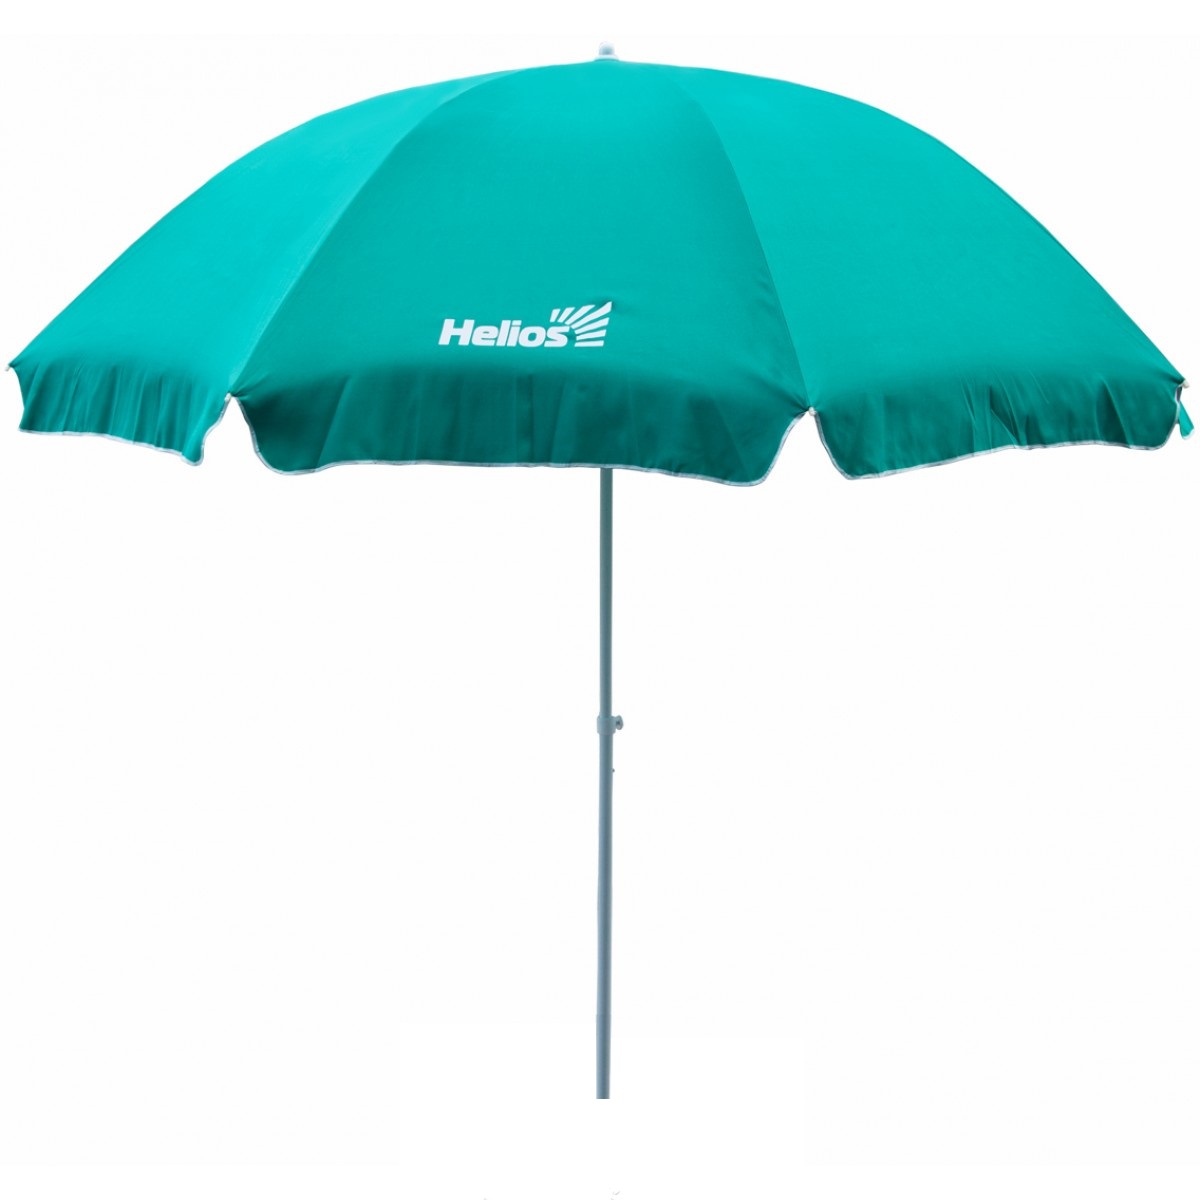 Зонт пляжный прямой HS-300-1, диаметр 300 см